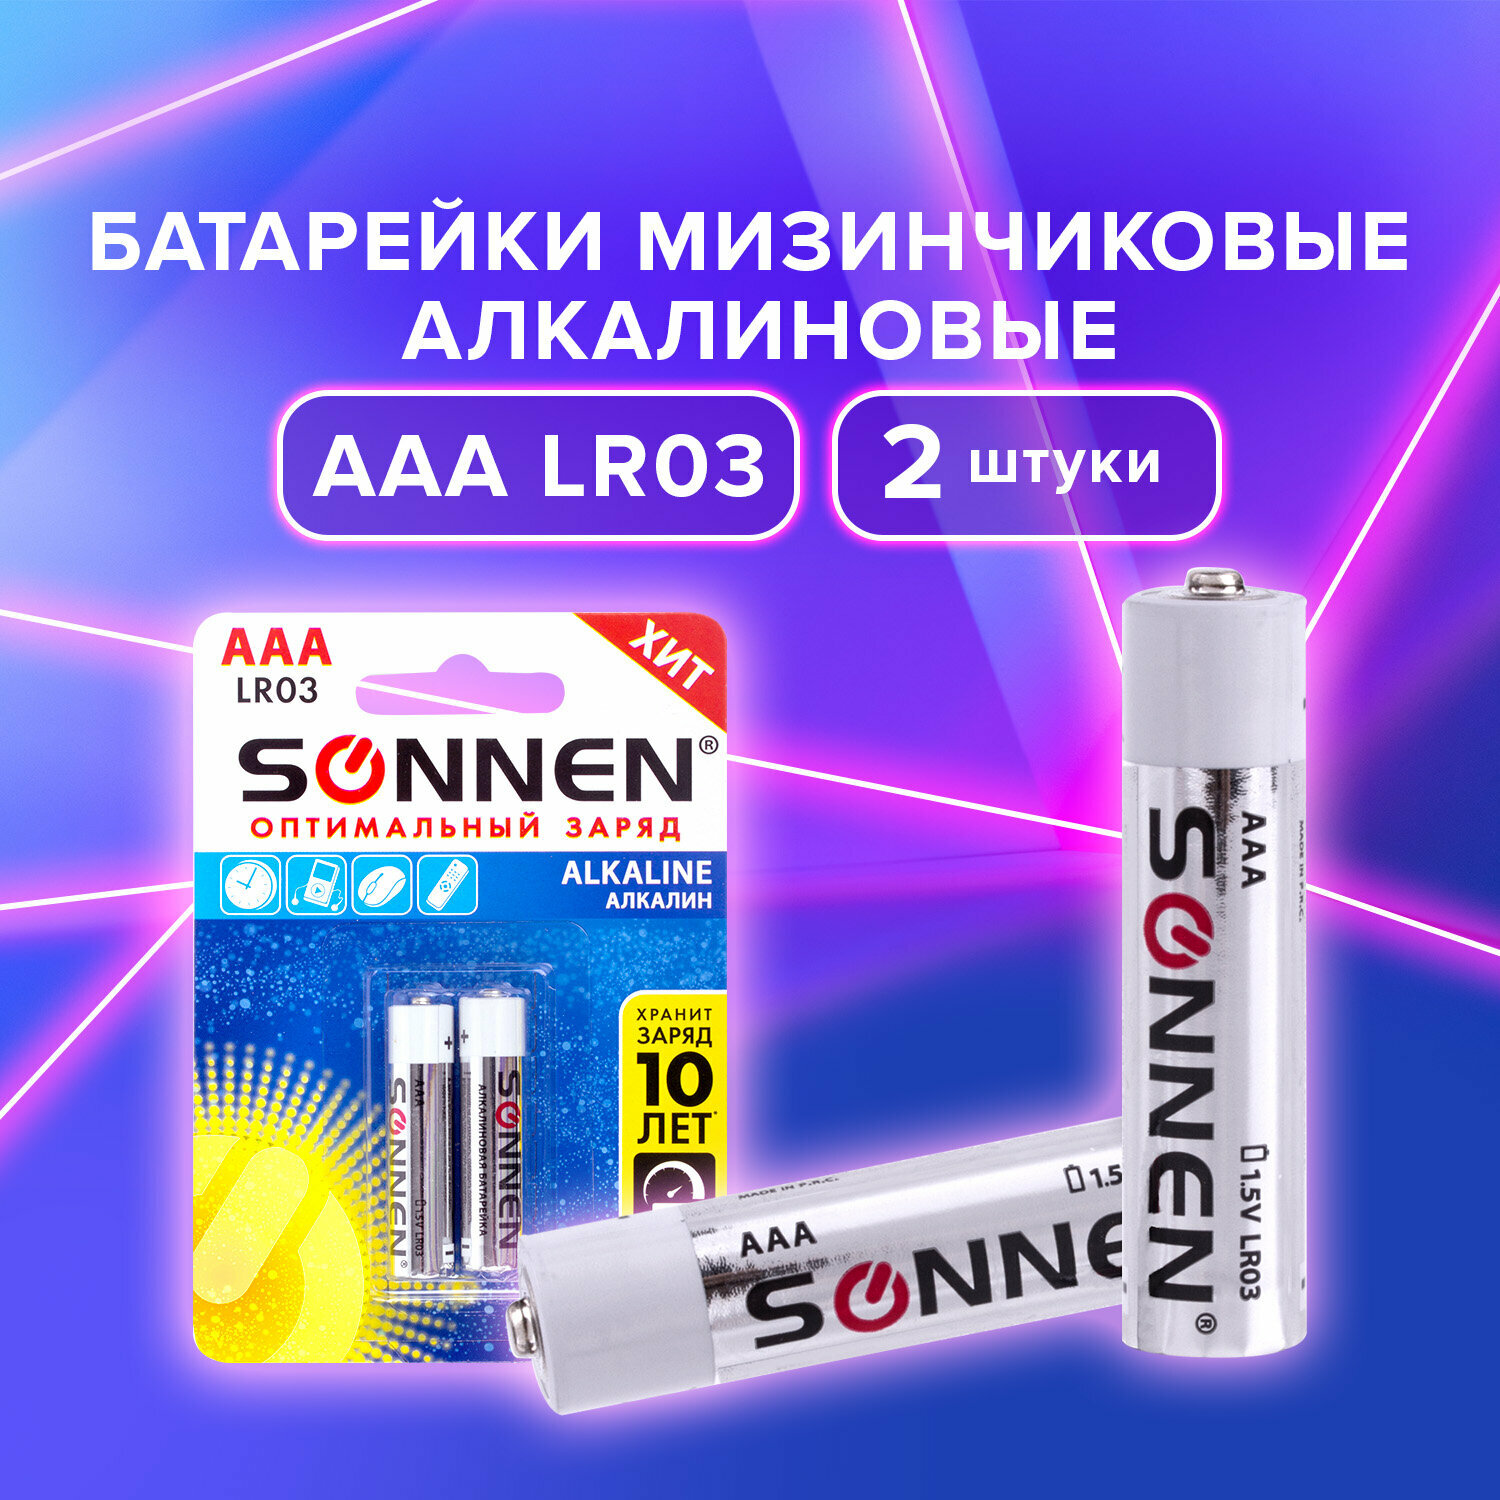 Батарейки комплект 2 шт, SONNEN Alkaline, AAA (LR03, 24А), алкалиновые, мизинчиковые, блистер,451087